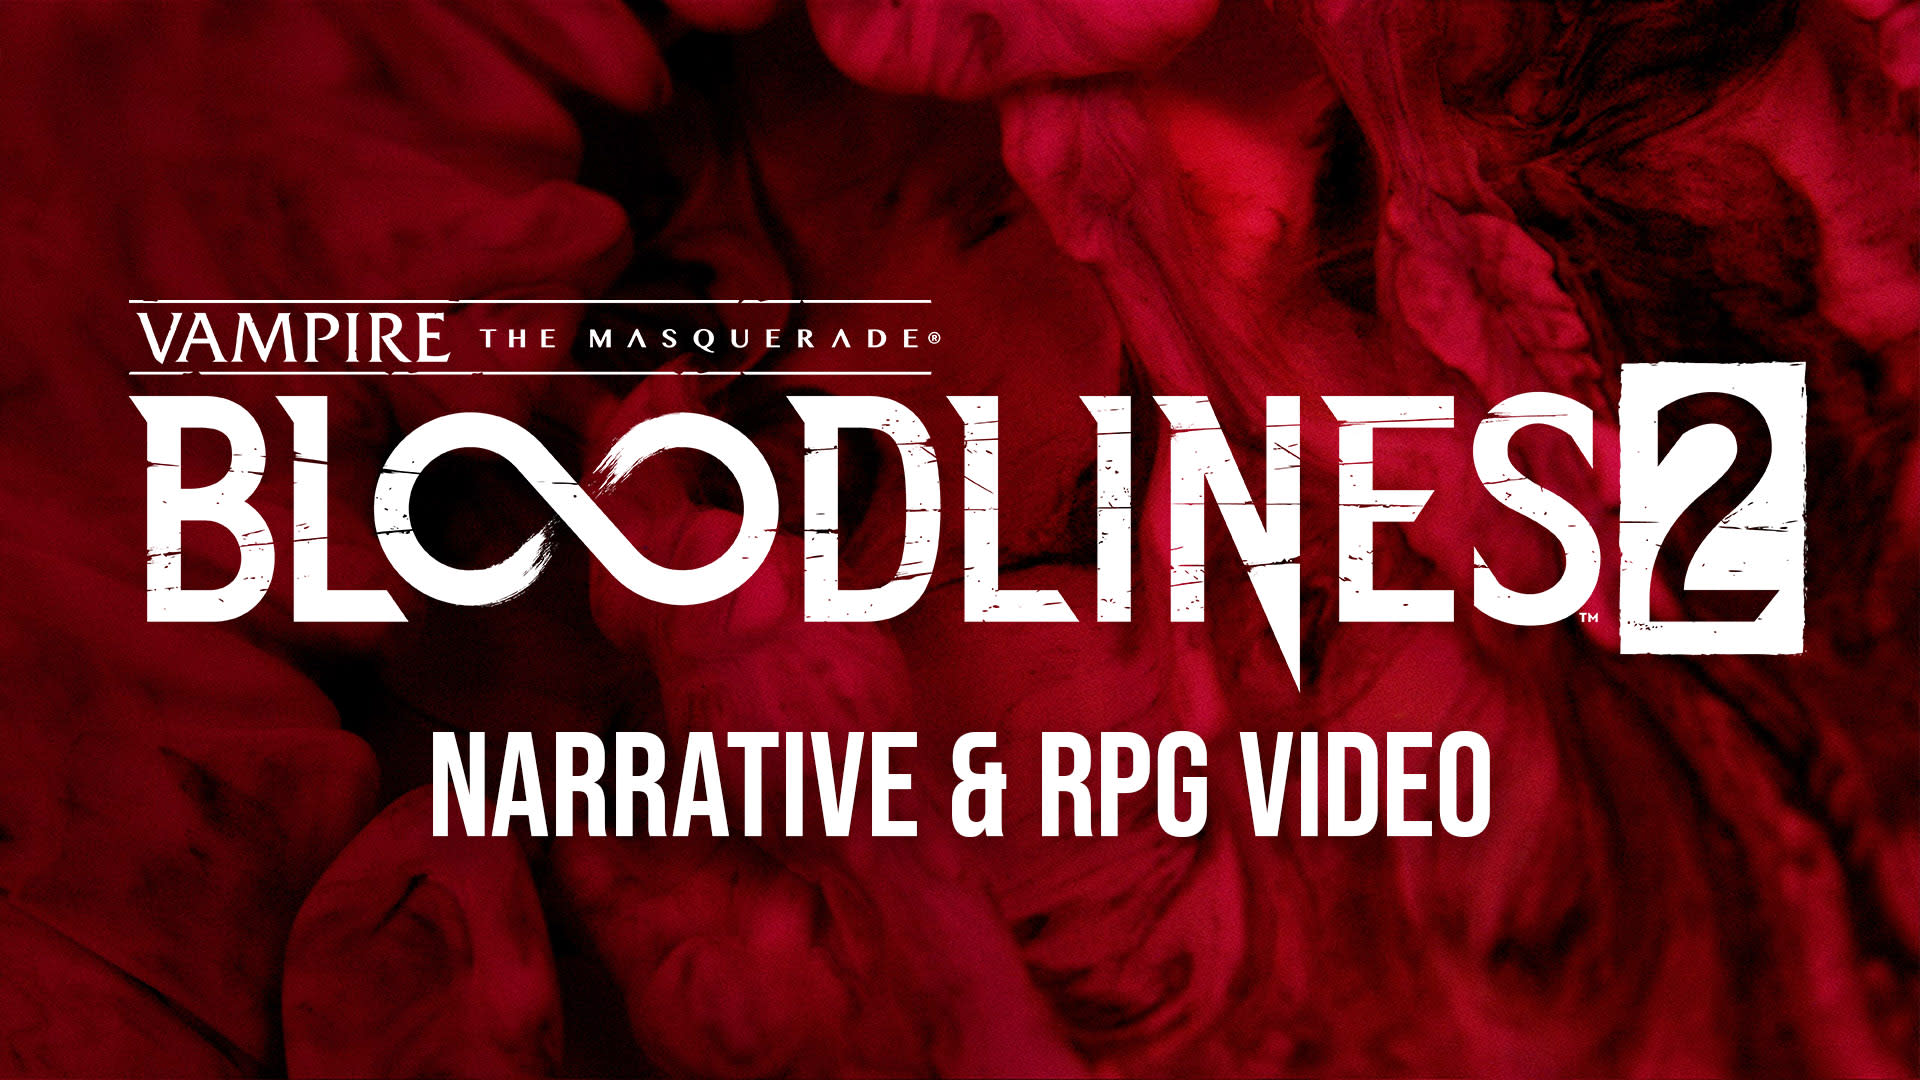 World of Darkness - Bloodlines 2 Narrative RPG Teaser